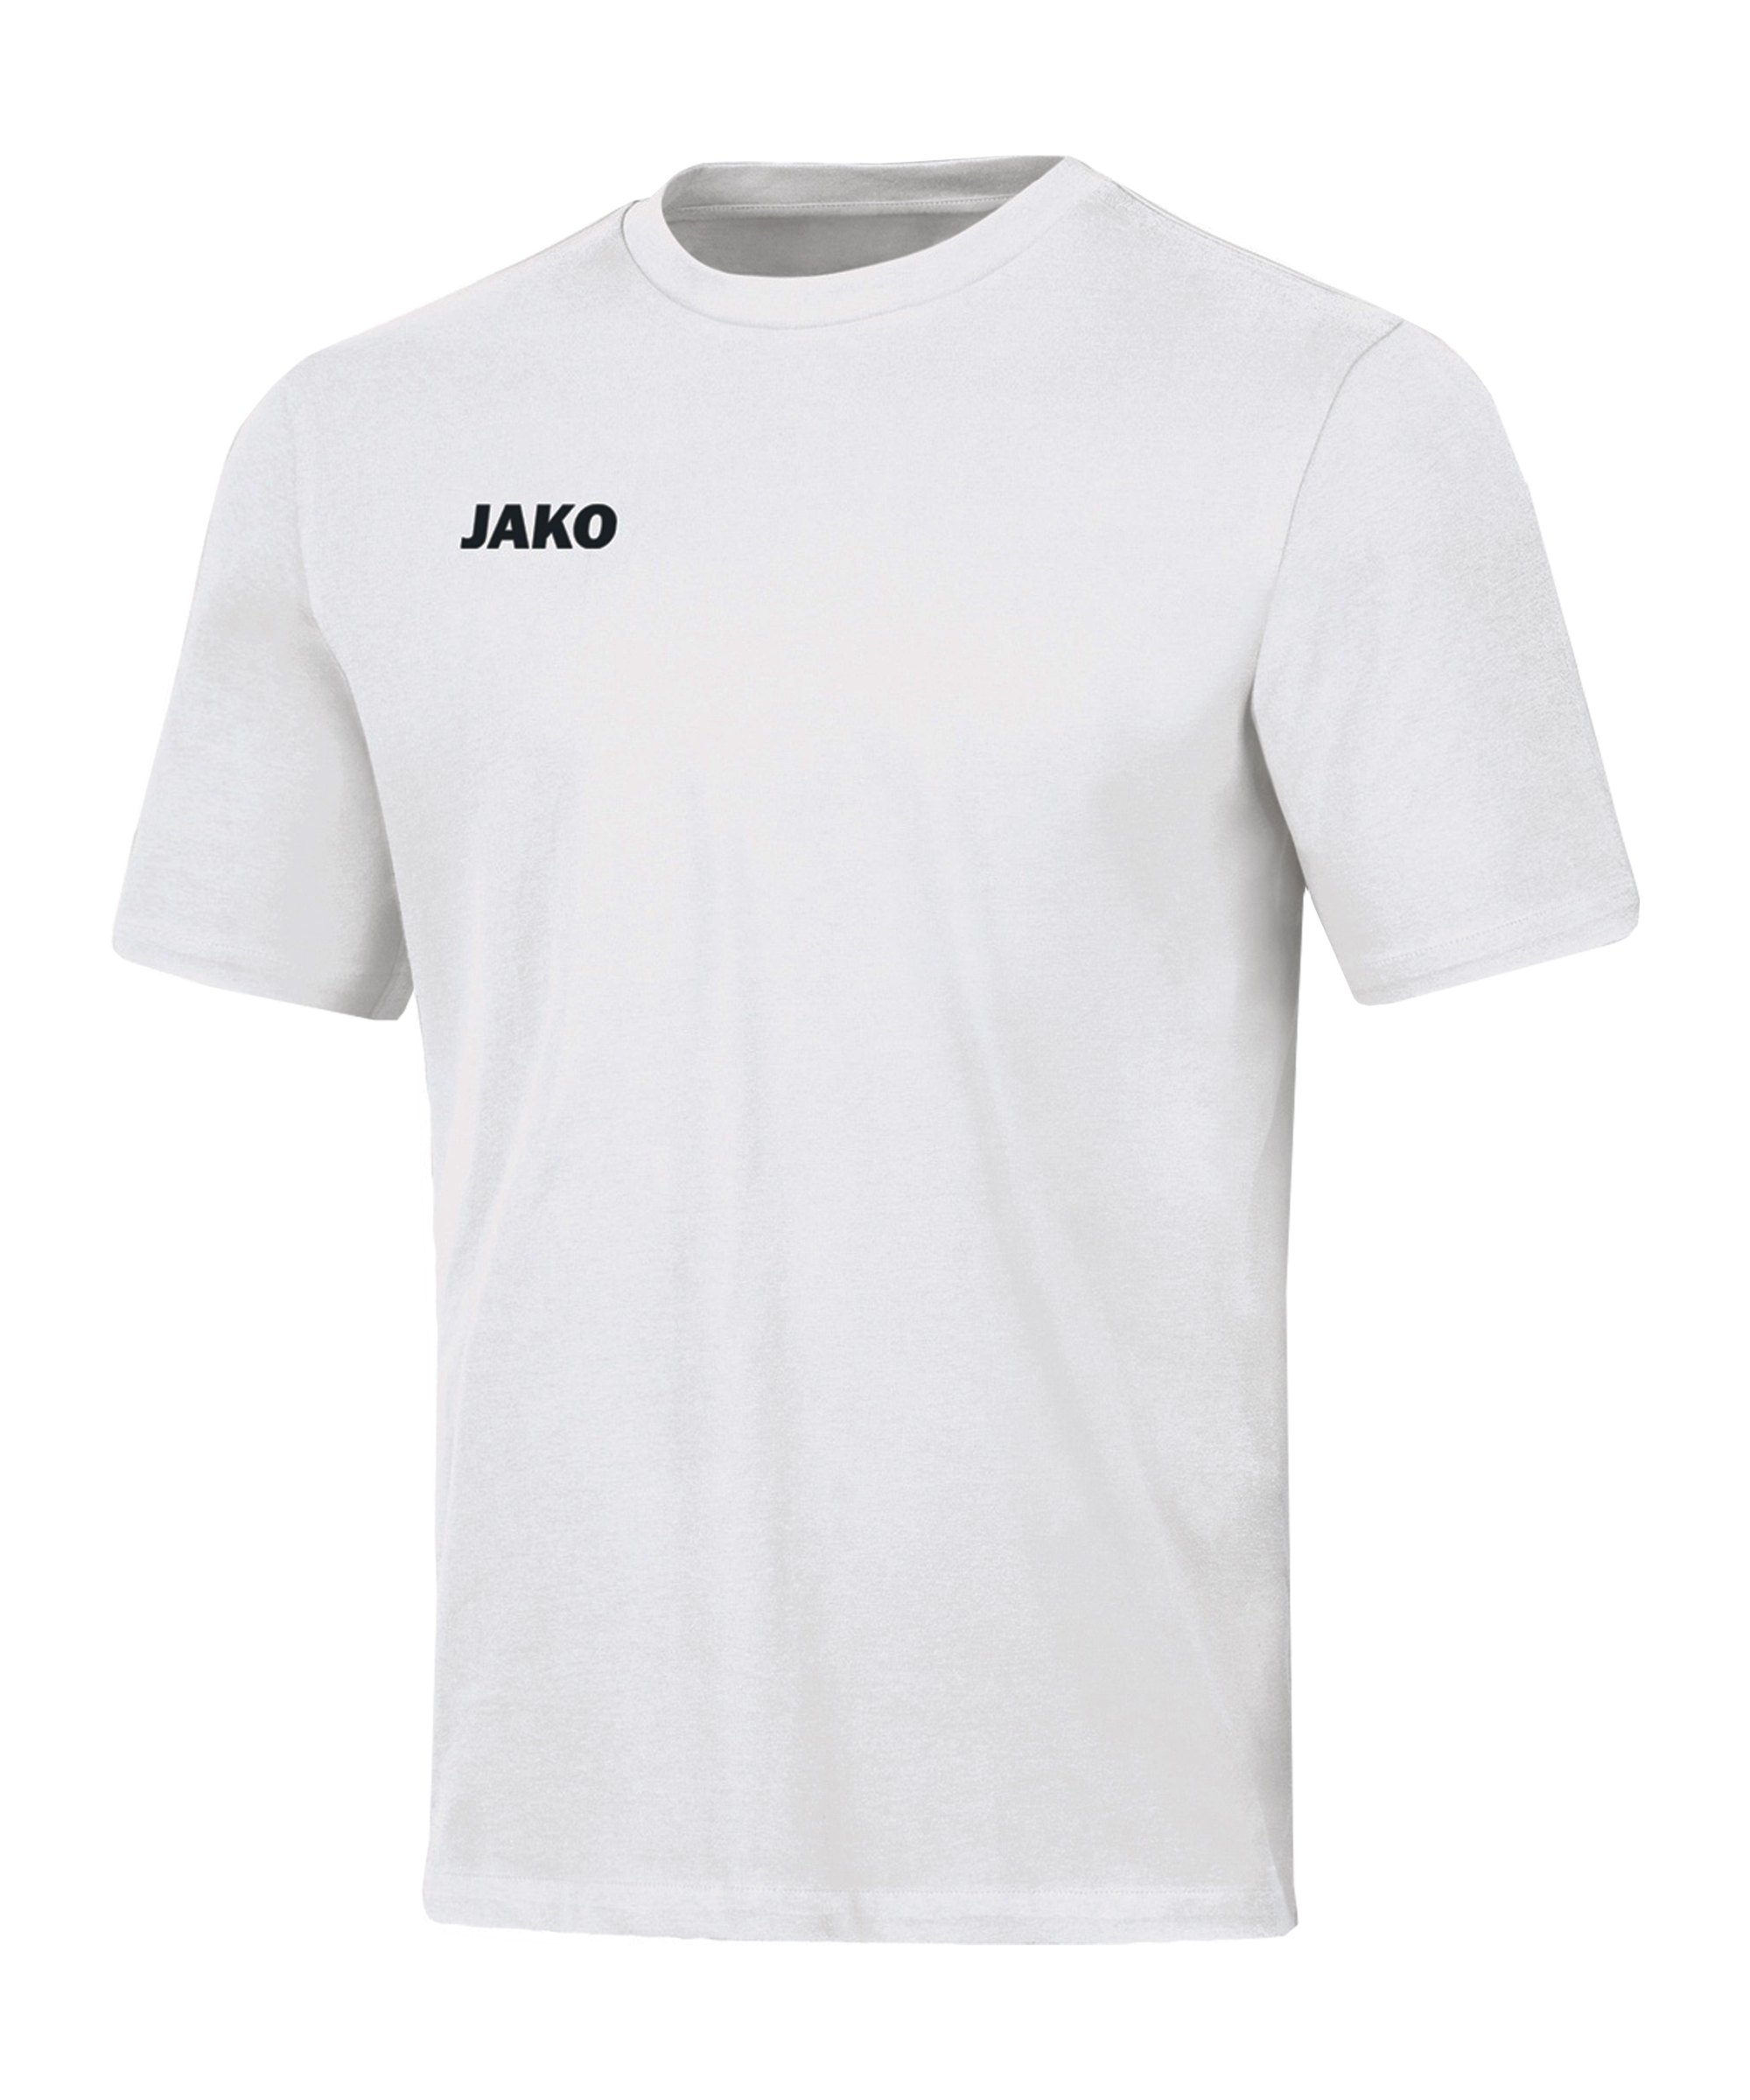 JAKO Base T-Shirt Kids Weiss F00 - weiss